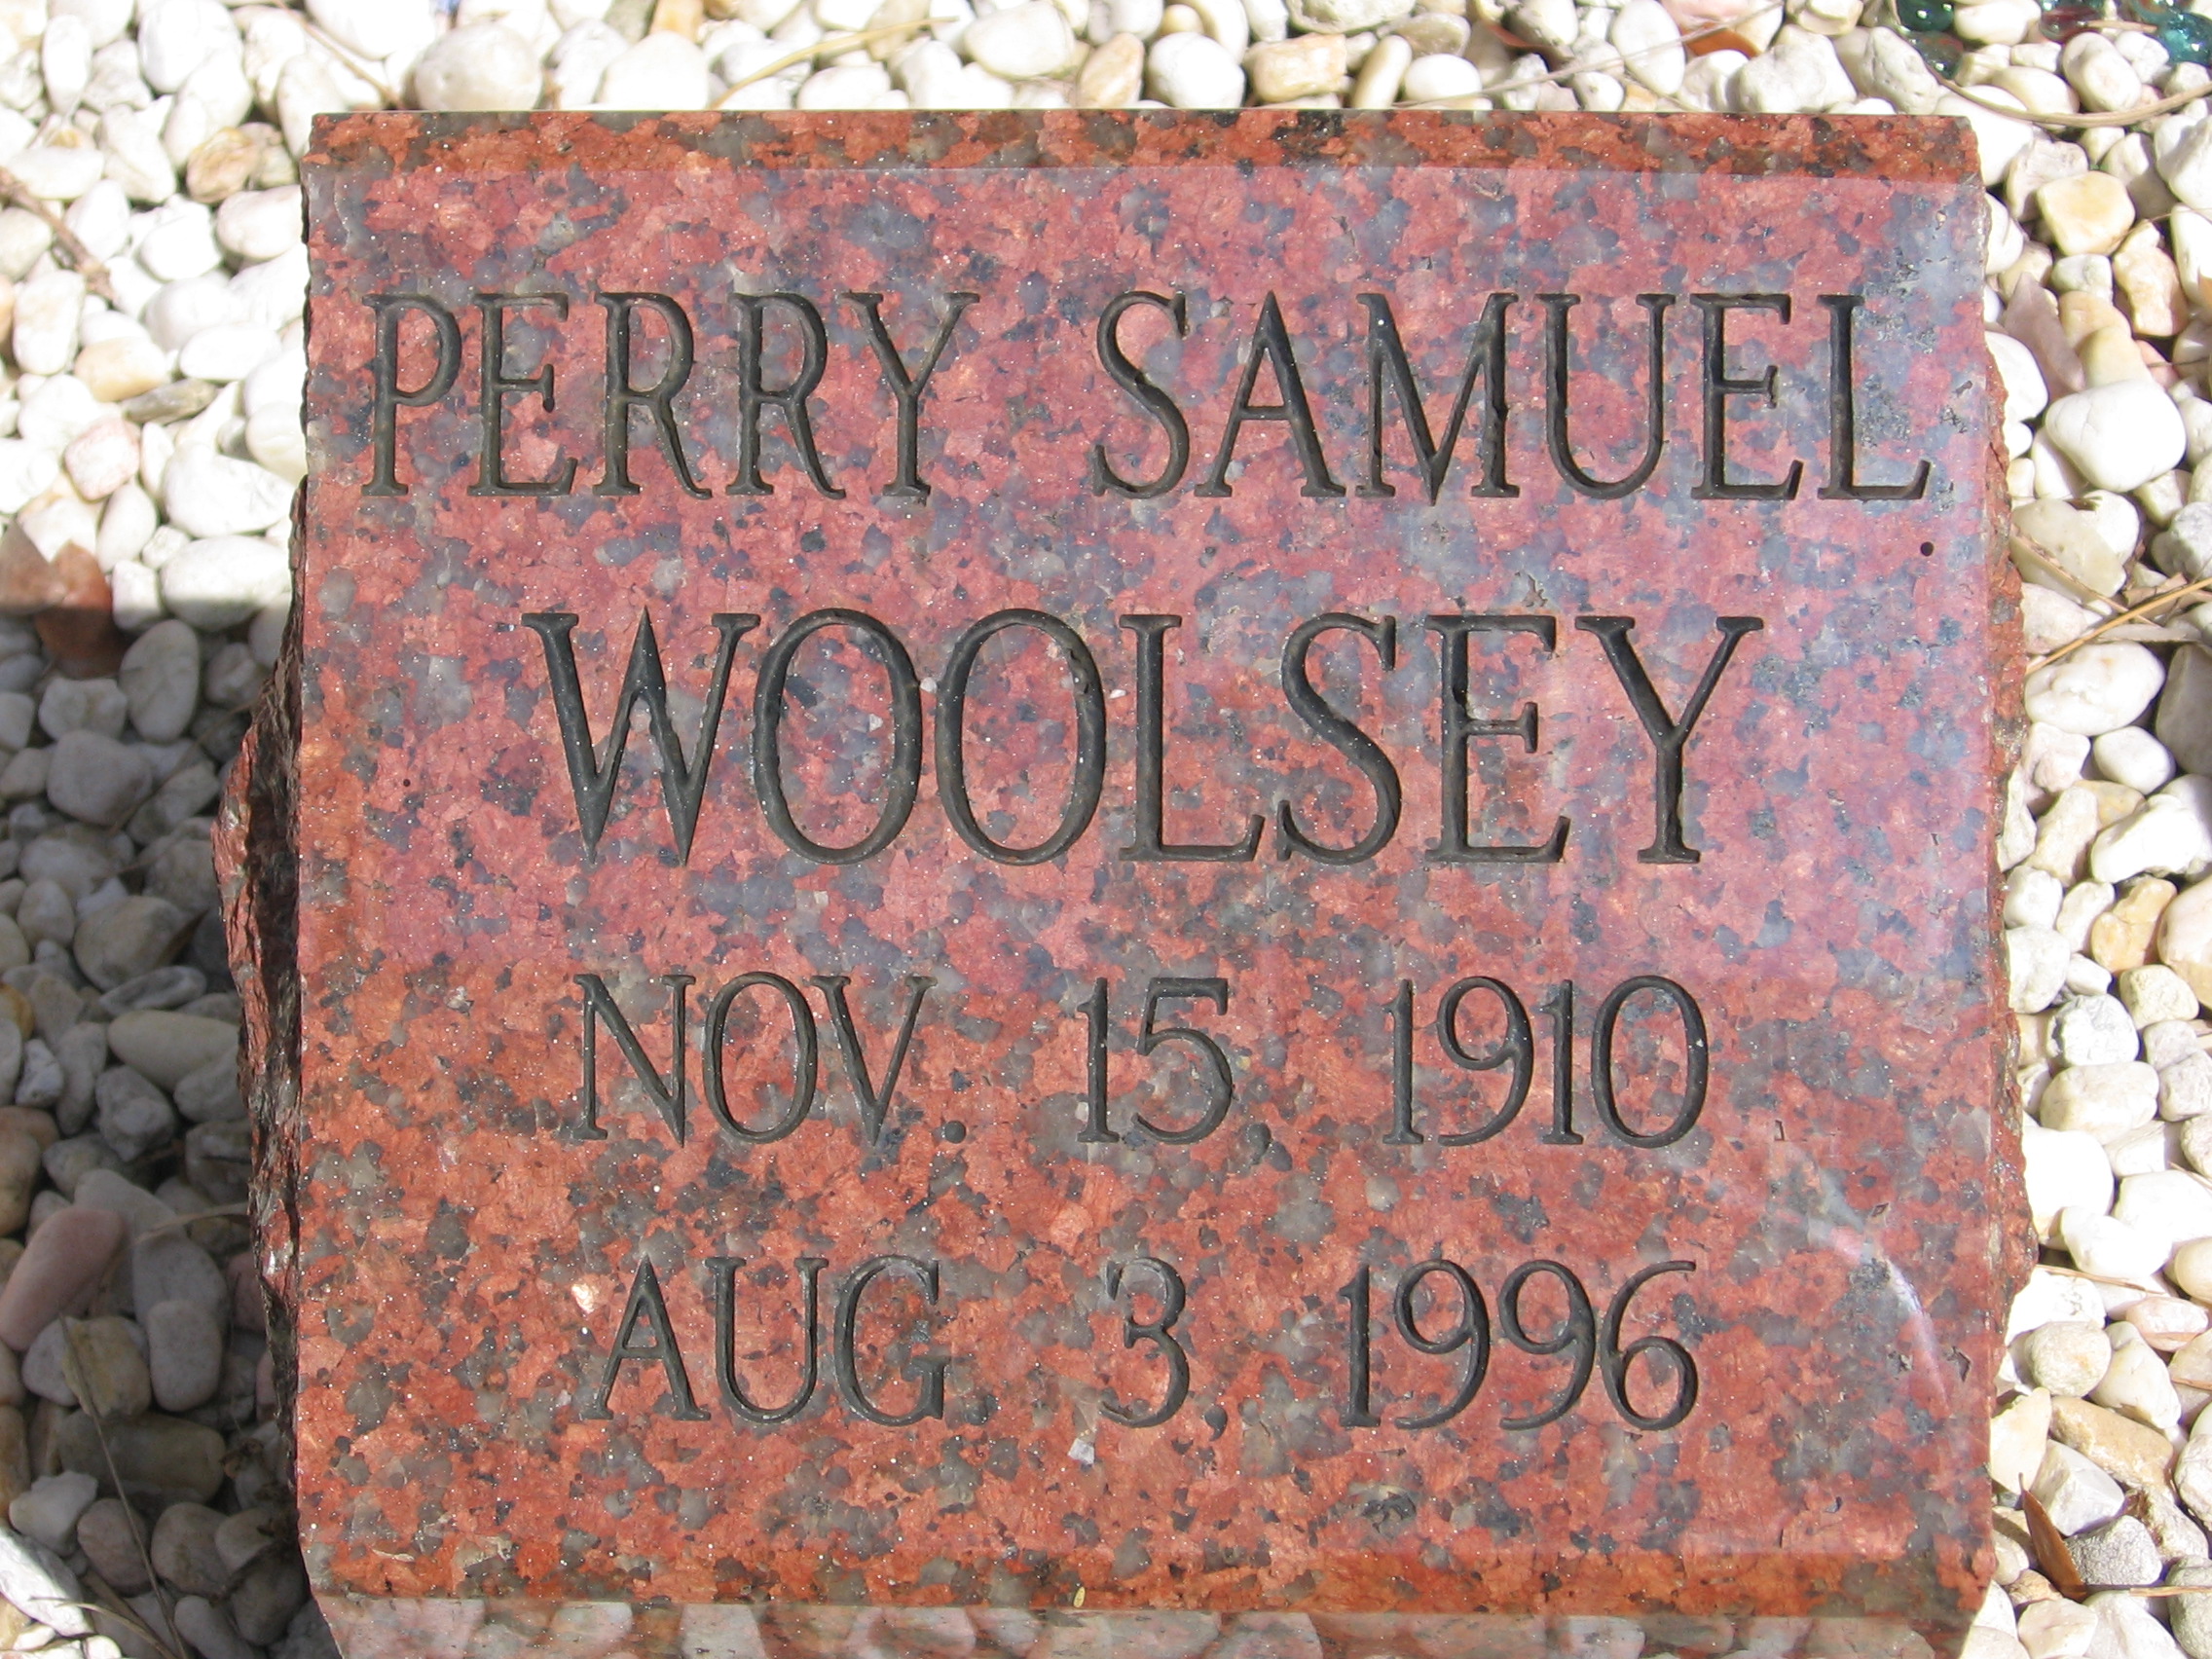 Perry Samuel Woolsey